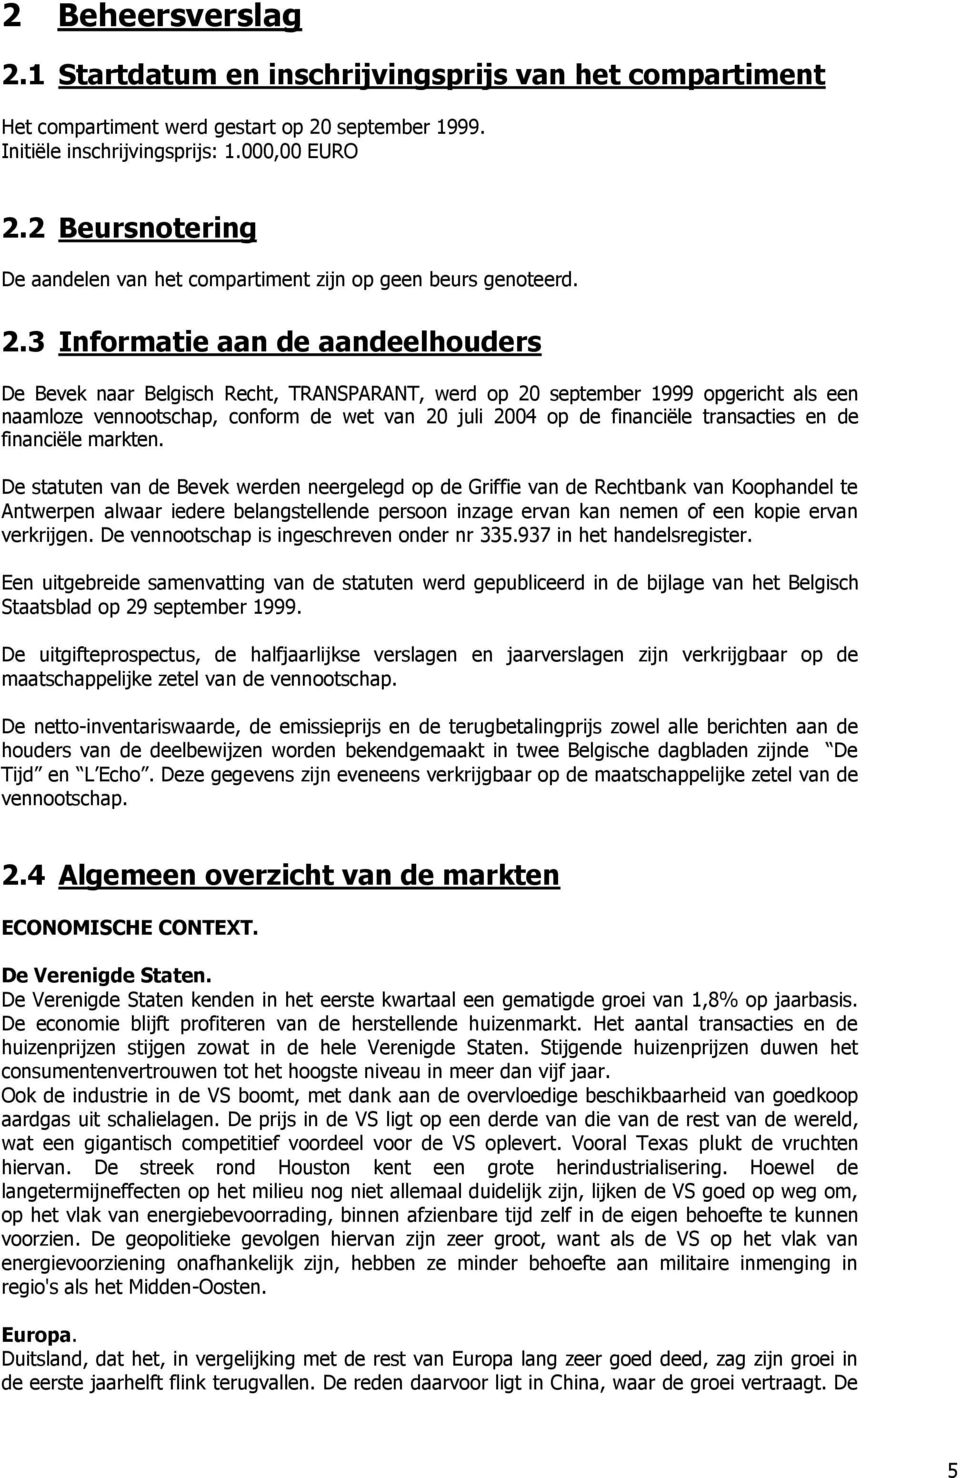 3 Informatie aan de aandeelhouders De Bevek naar Belgisch Recht, TRANSPARANT, werd op 20 september 1999 opgericht als een naamloze vennootschap, conform de wet van 20 juli 2004 op de financiële